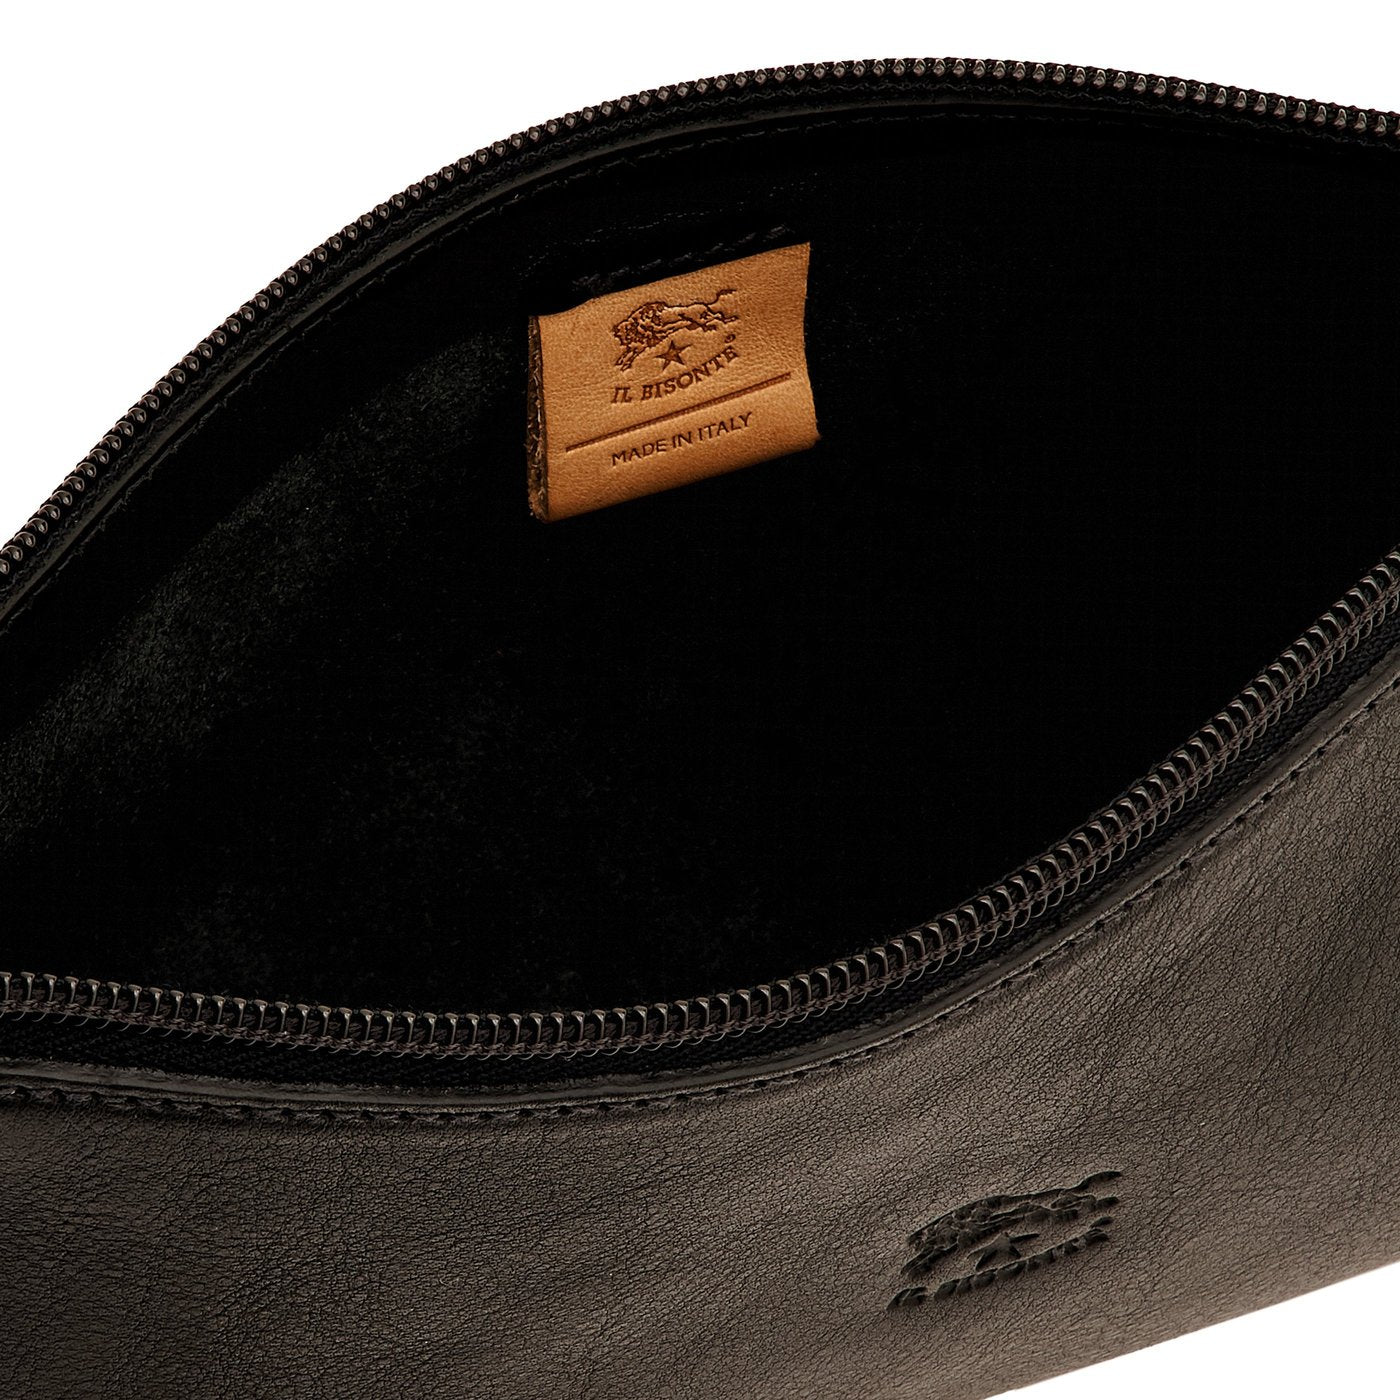 Salina | Women's shoulder bag in leather color black